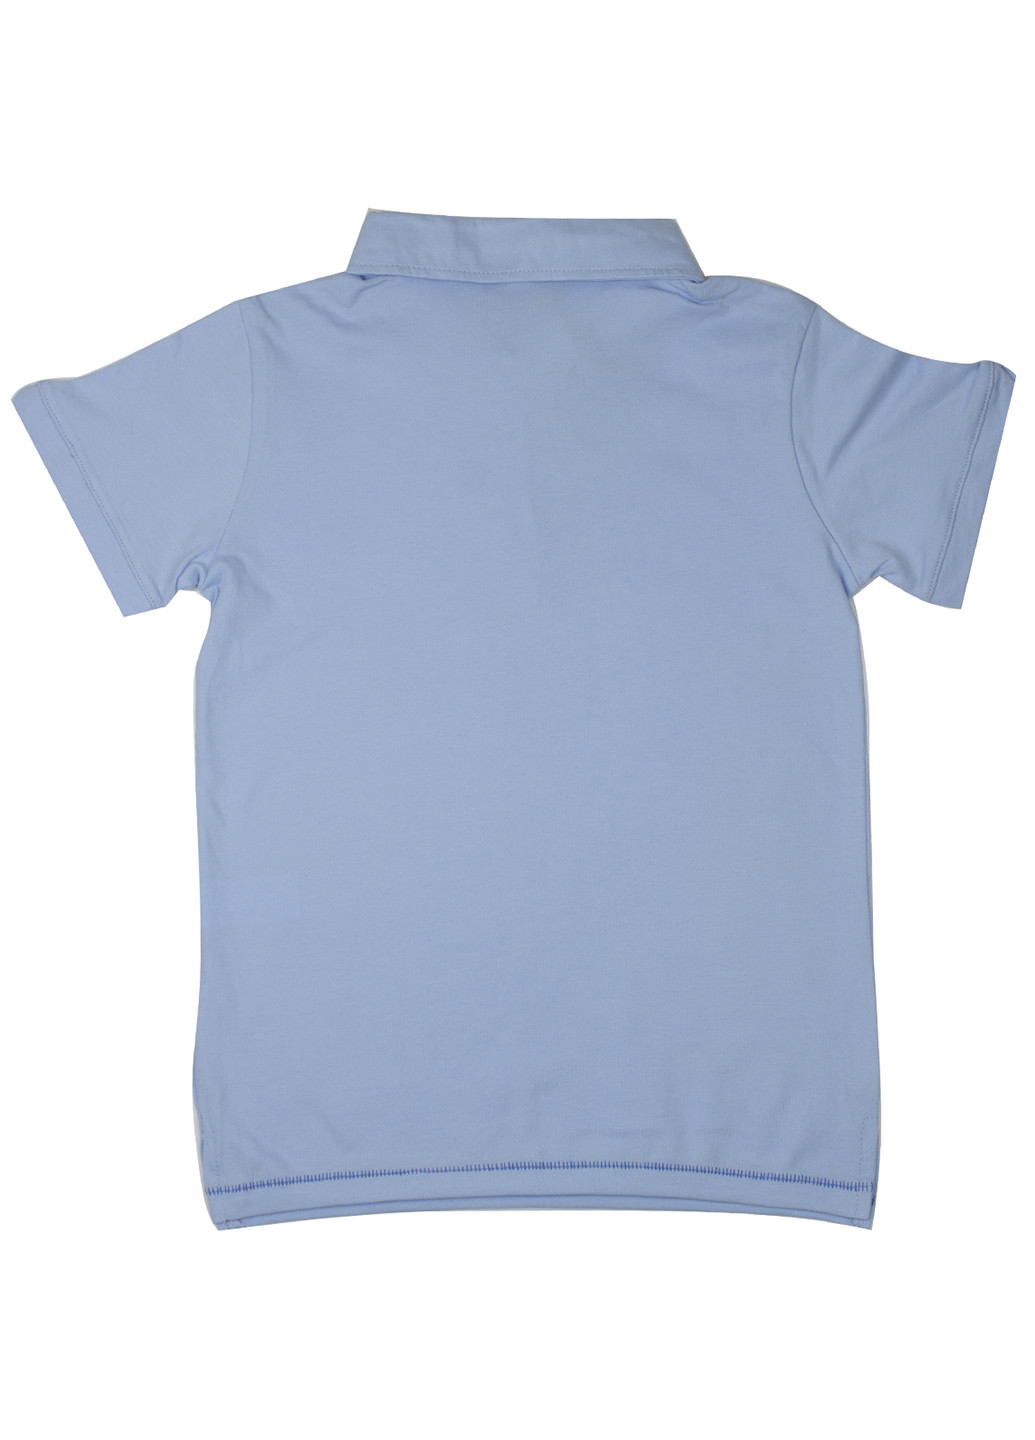 Голубой детская футболка-поло для мальчика Mackays с надписью